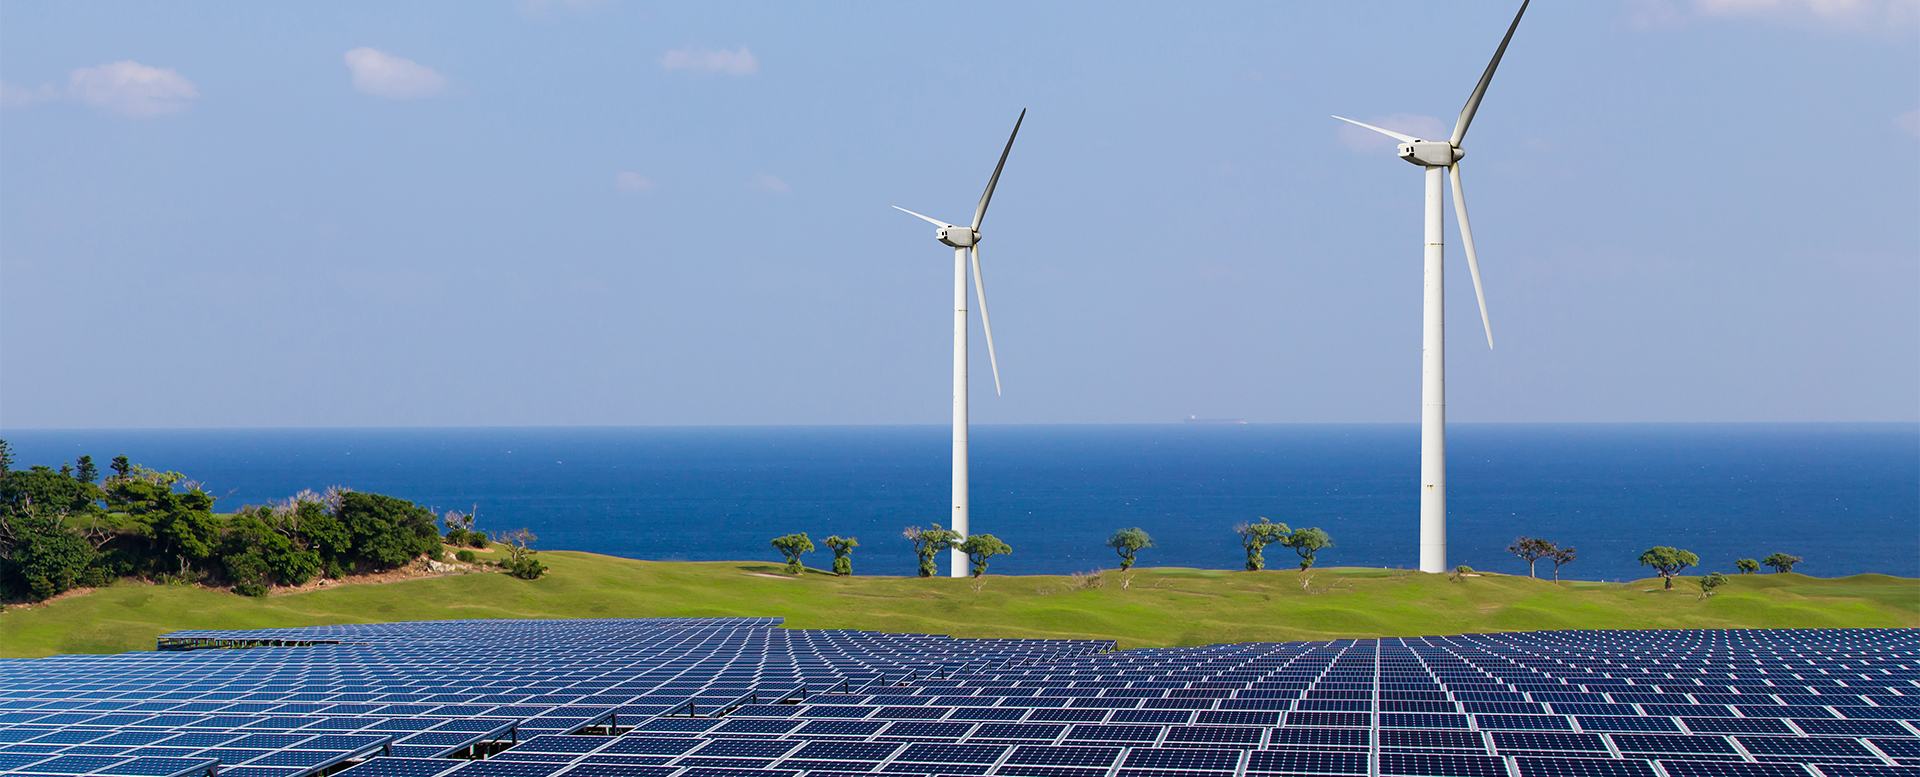 Promouvoir l’investissement dans les énergies renouvelables en Tunisie 